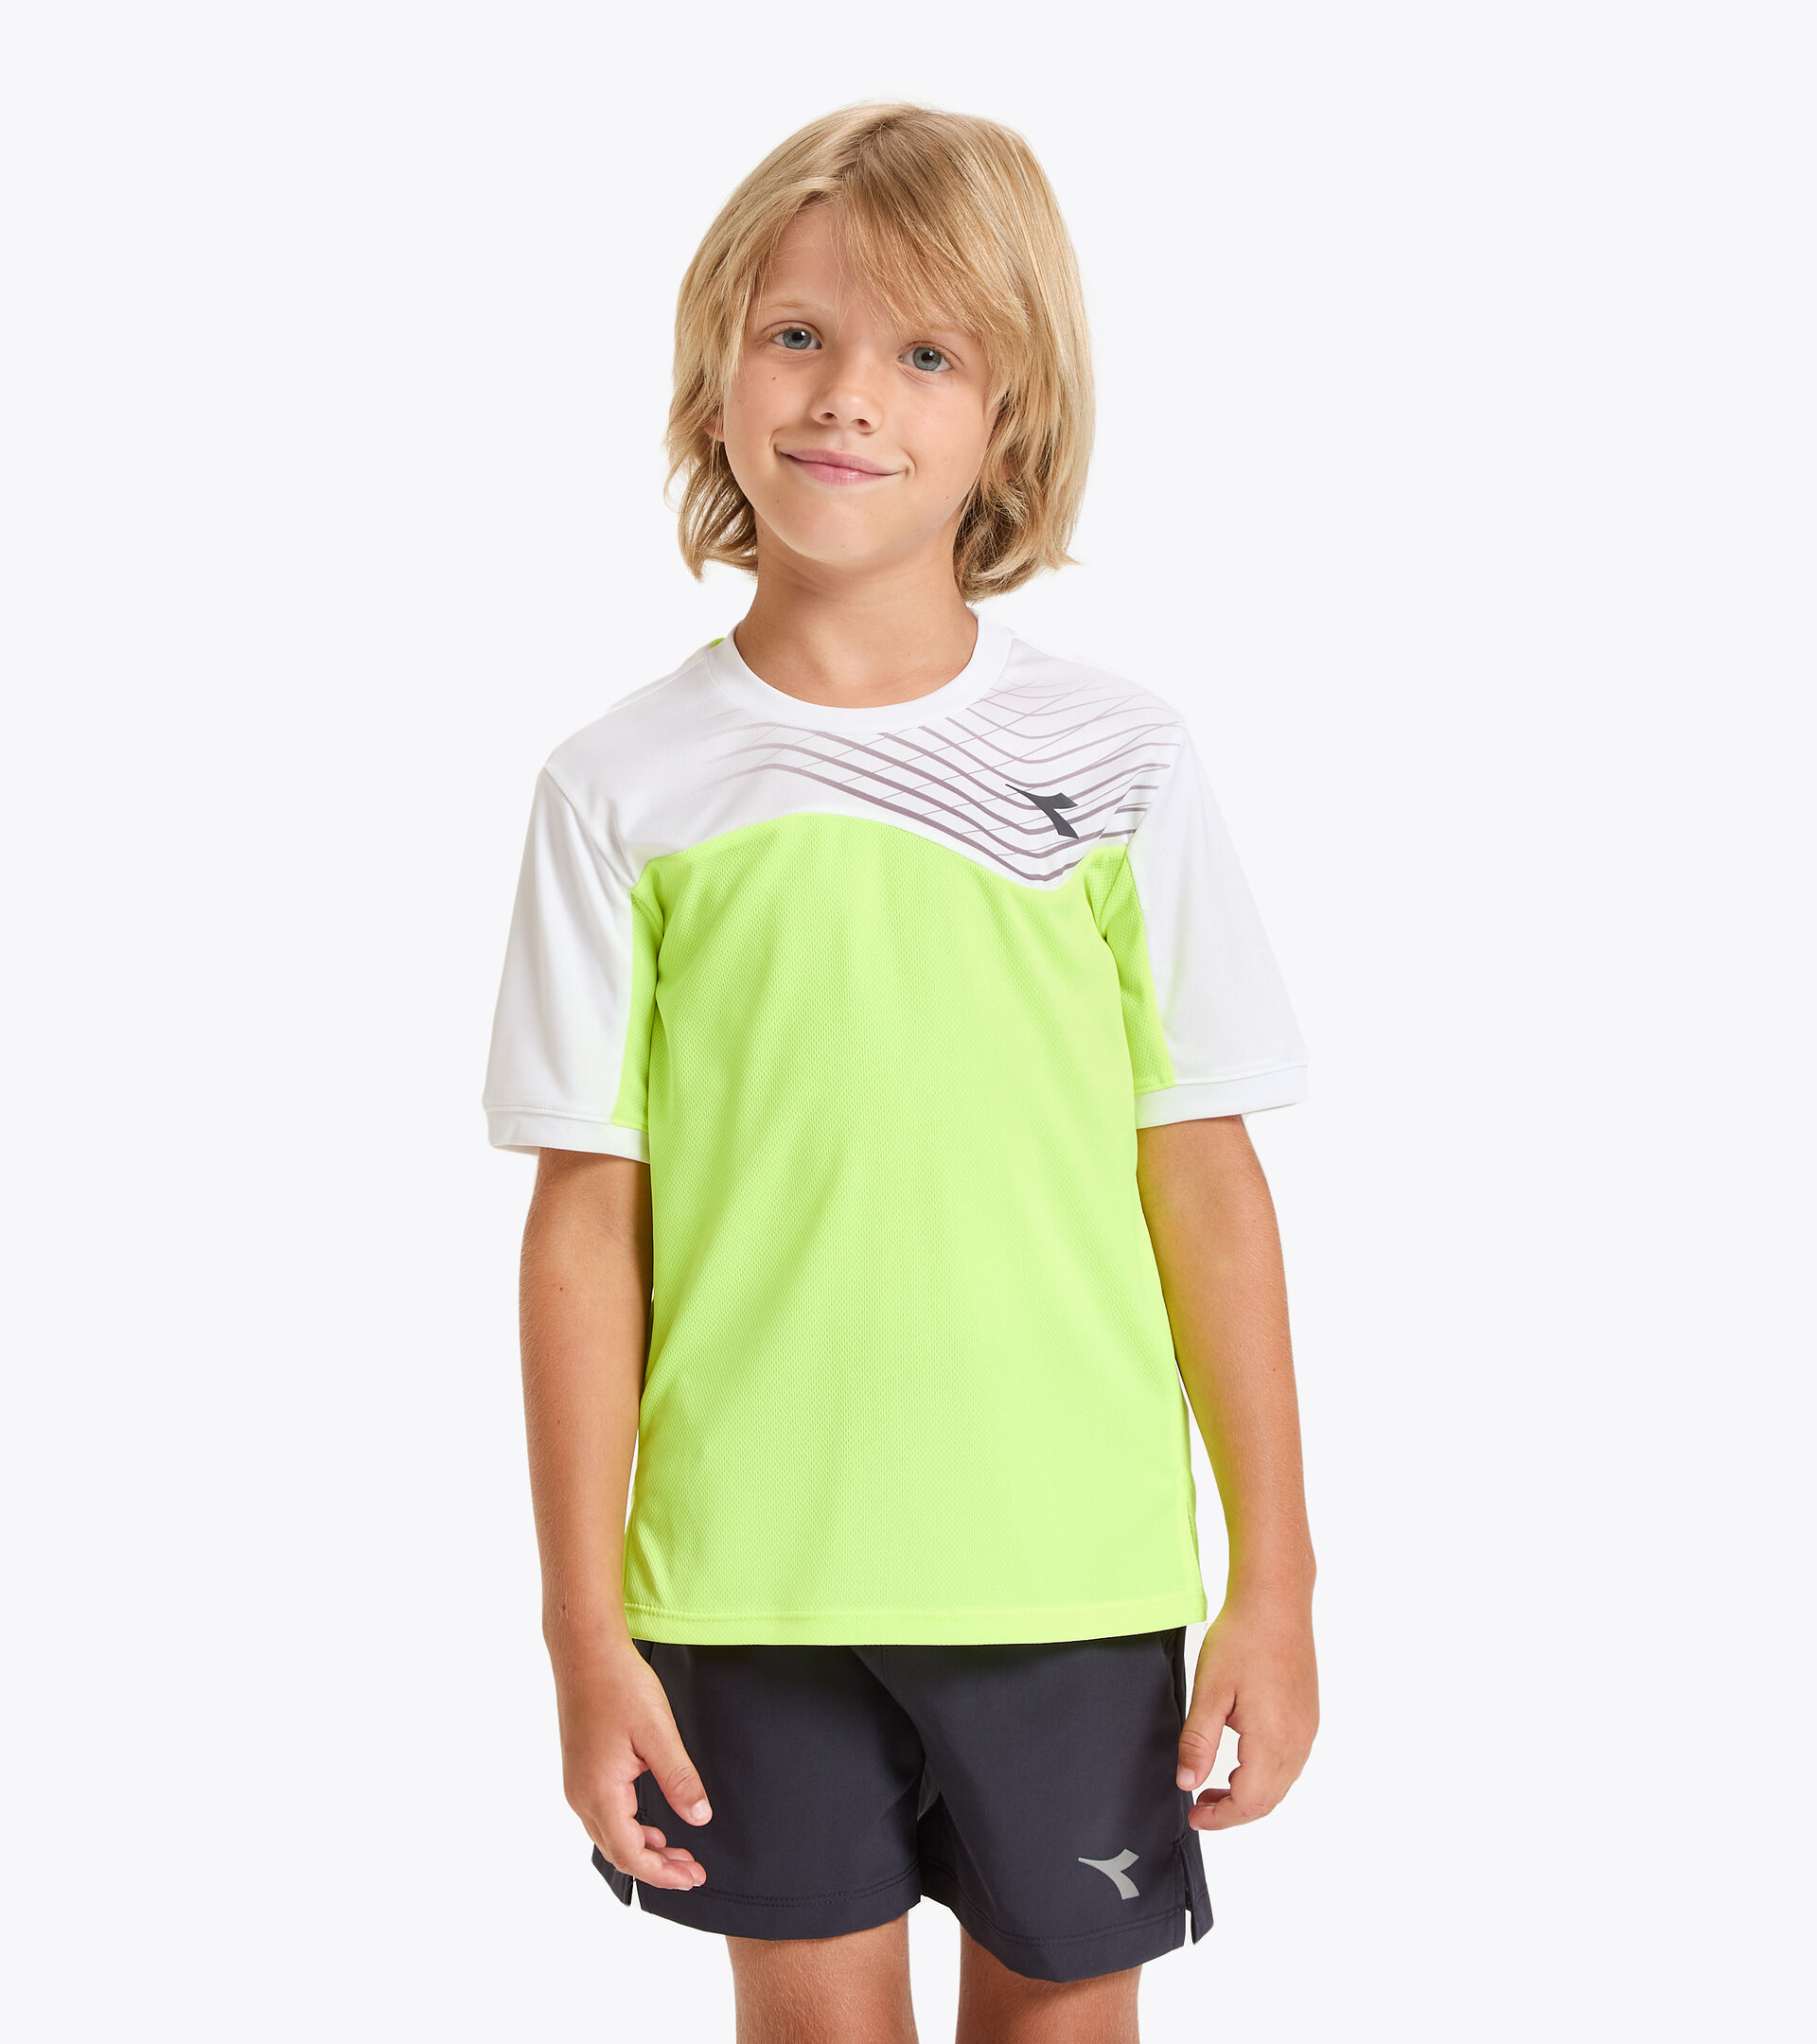 Tennis T-shirt - Junior J. T-SHIRT COURT FLUO YELLOW DD - Diadora